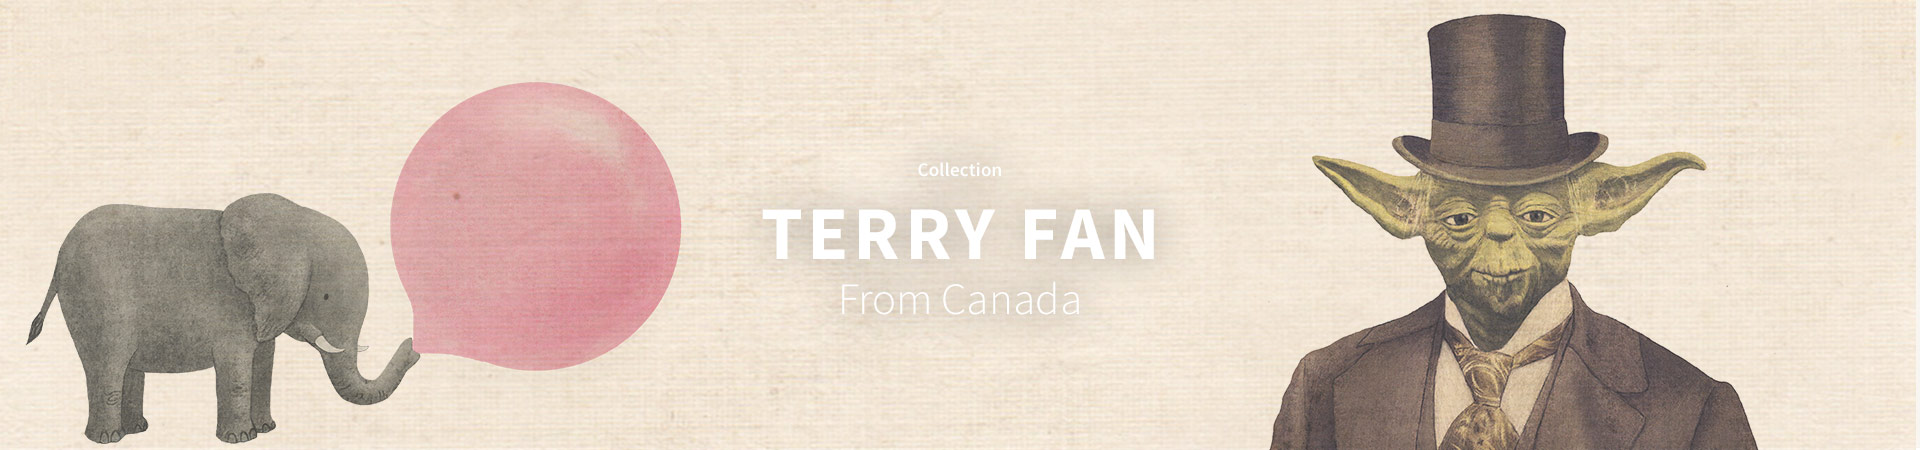 Terry Fan